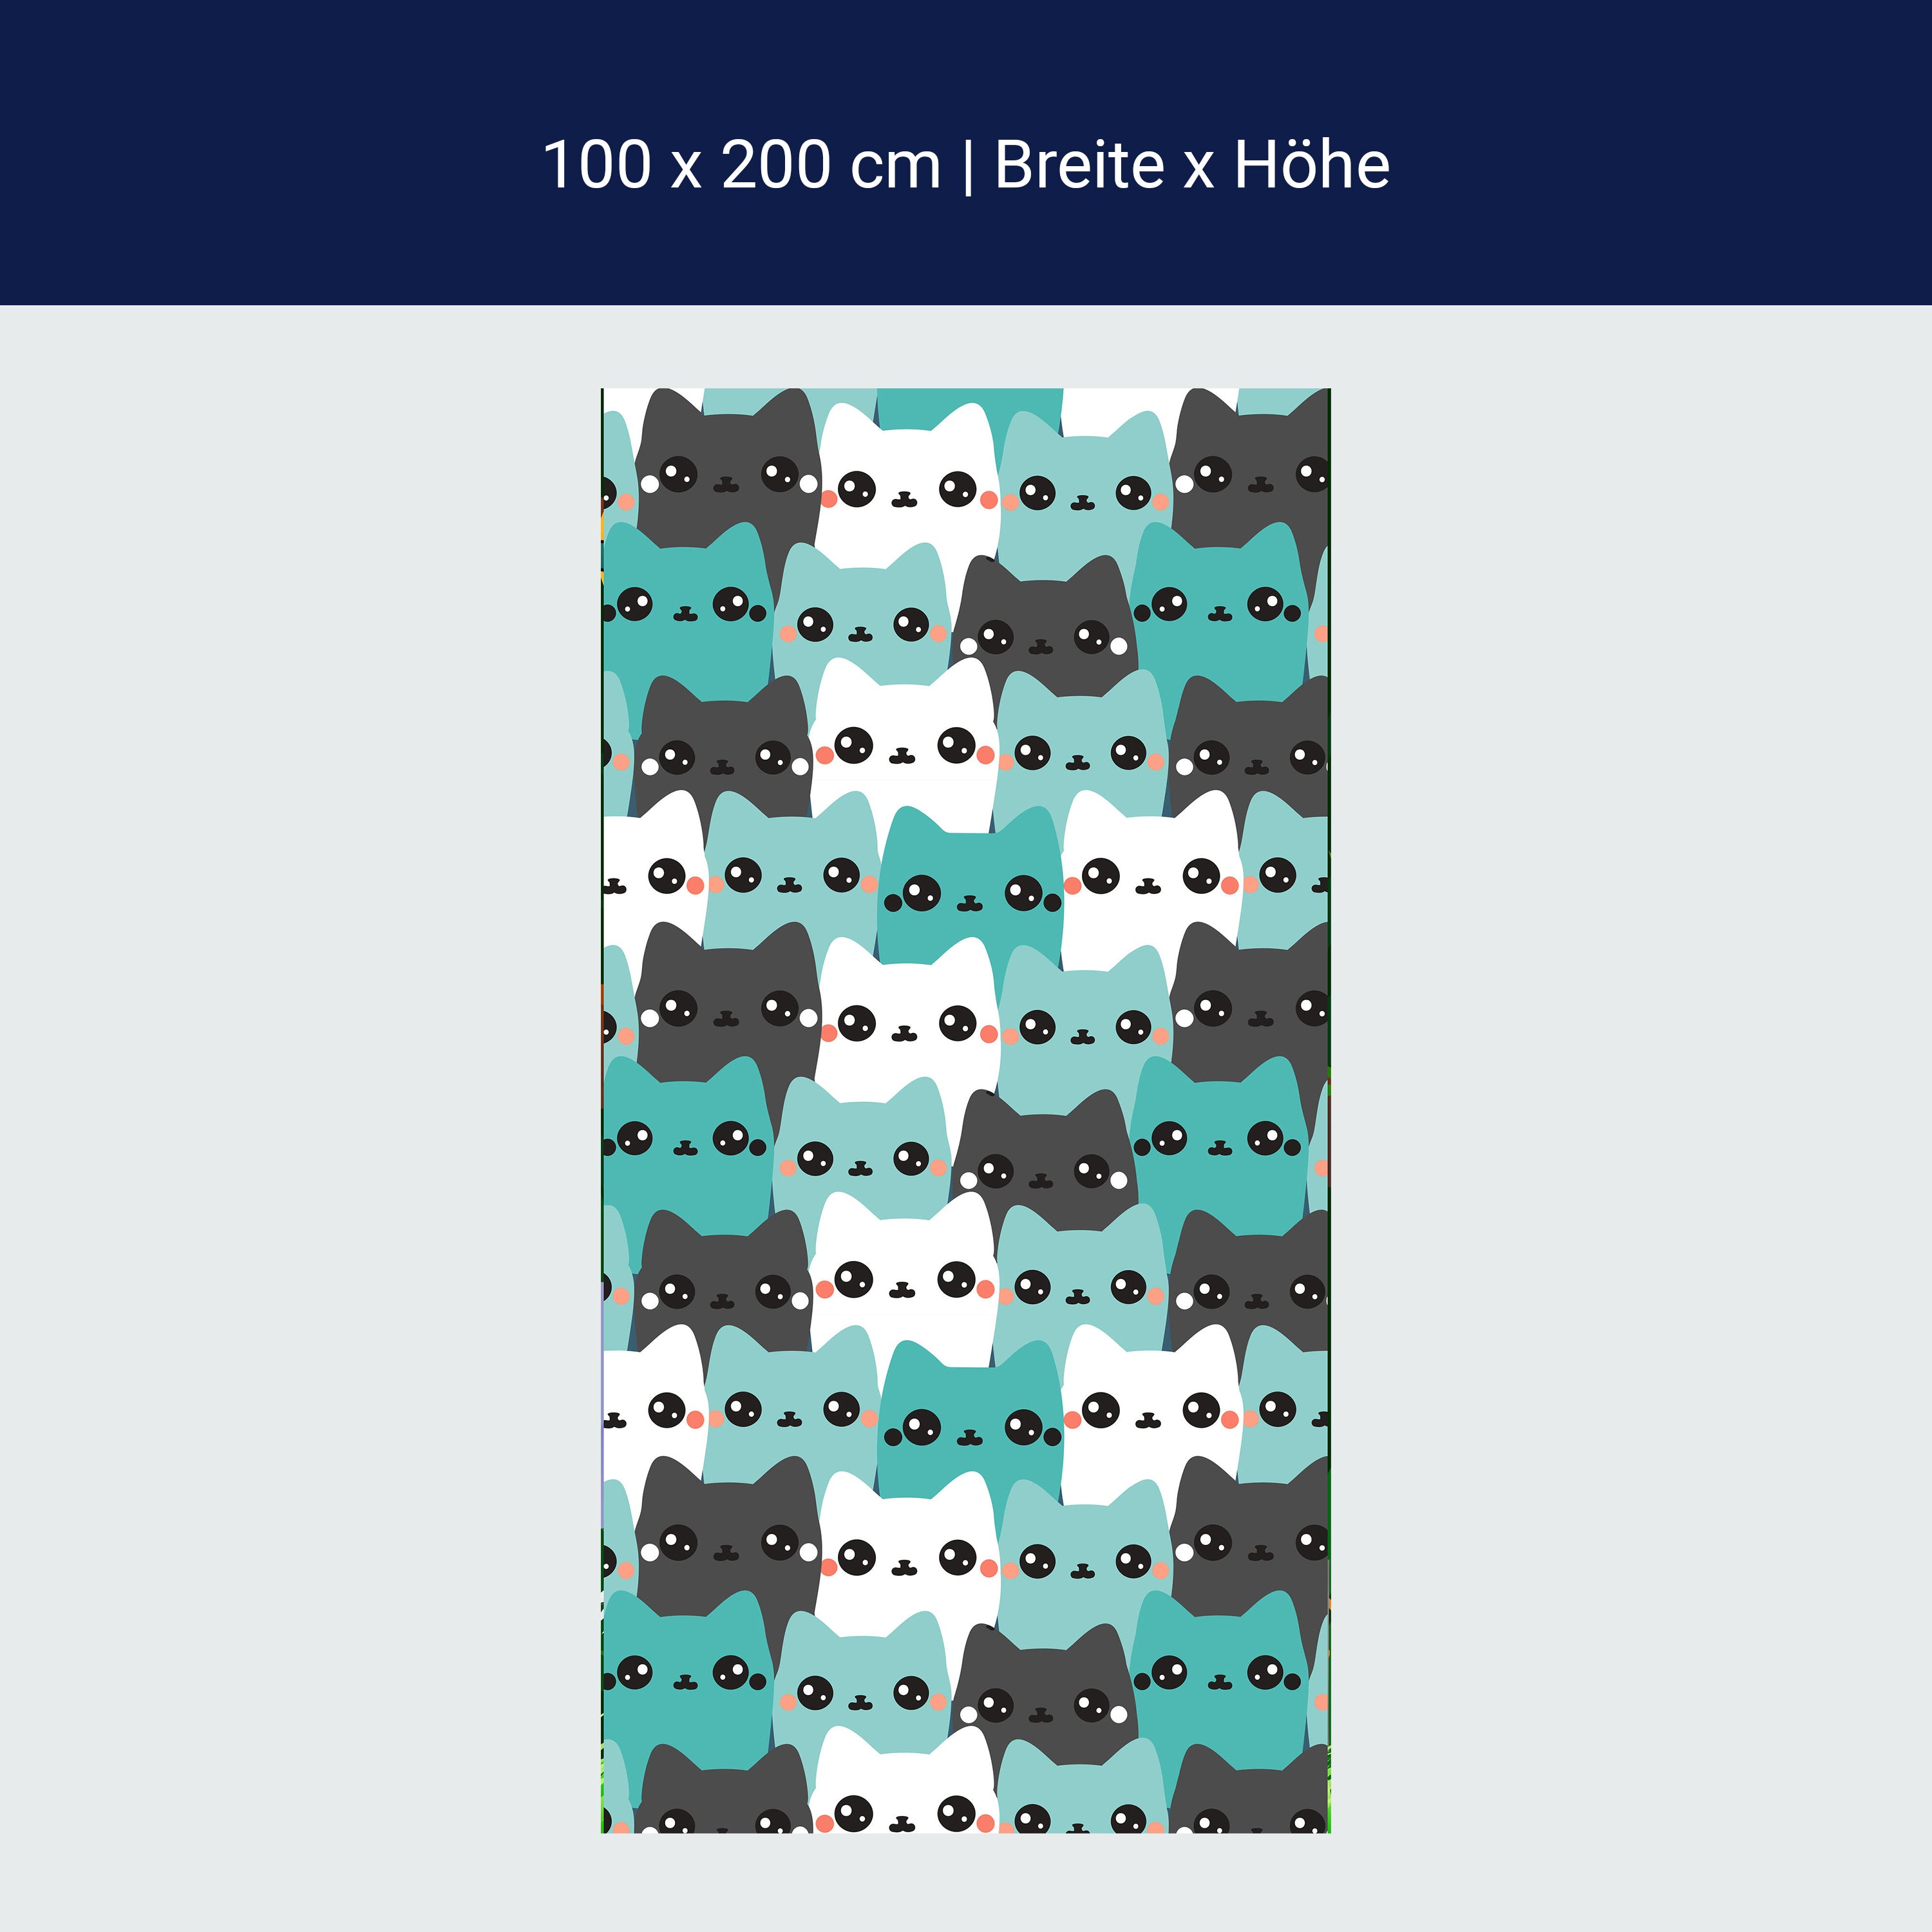 Door wallpaper cats, pattern M1467